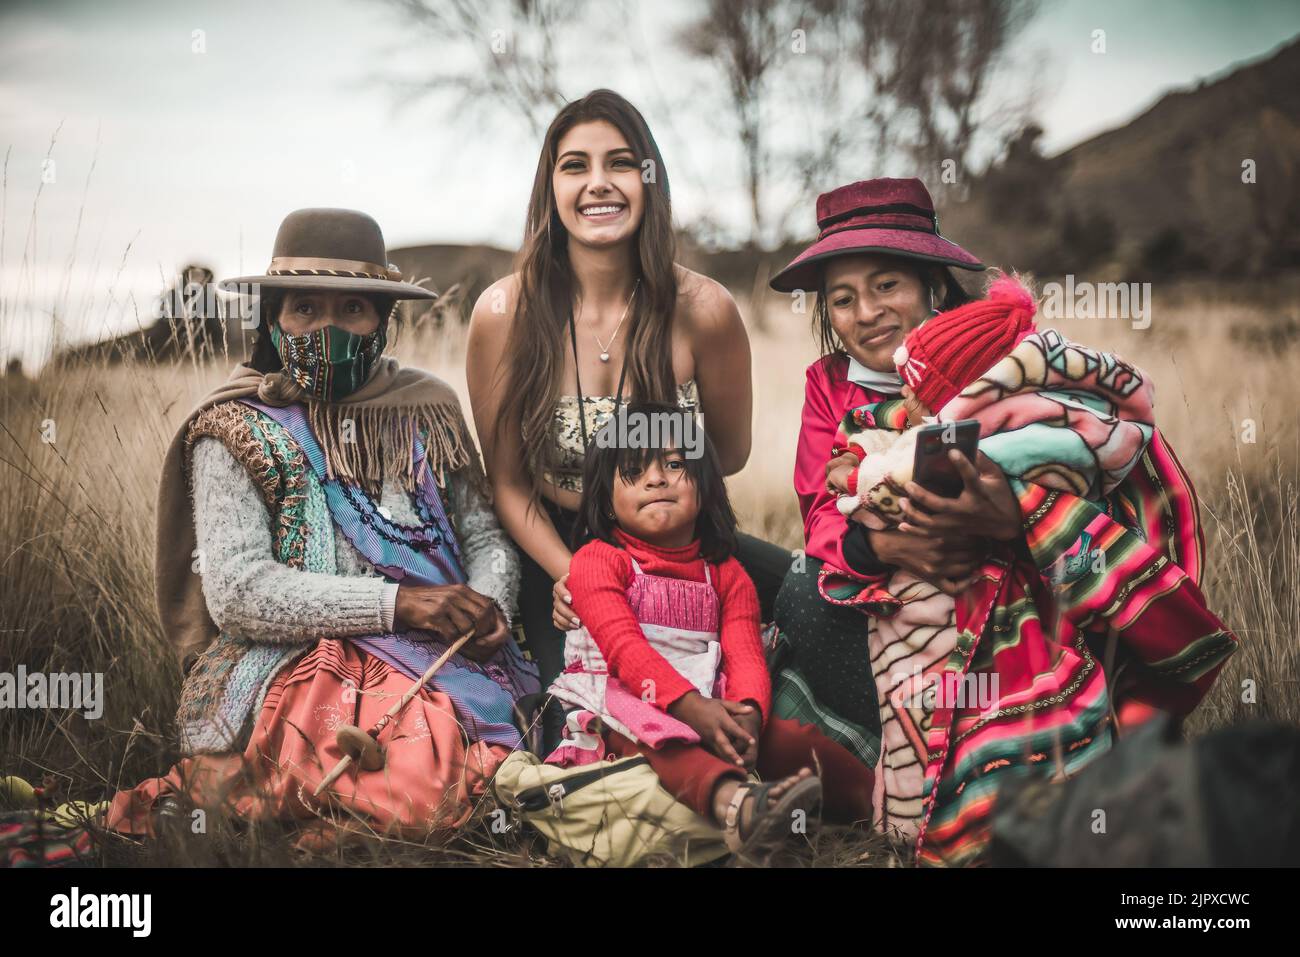 Una famiglia in posa con costumi tradizionali boliviani e colorati all'aperto Foto Stock